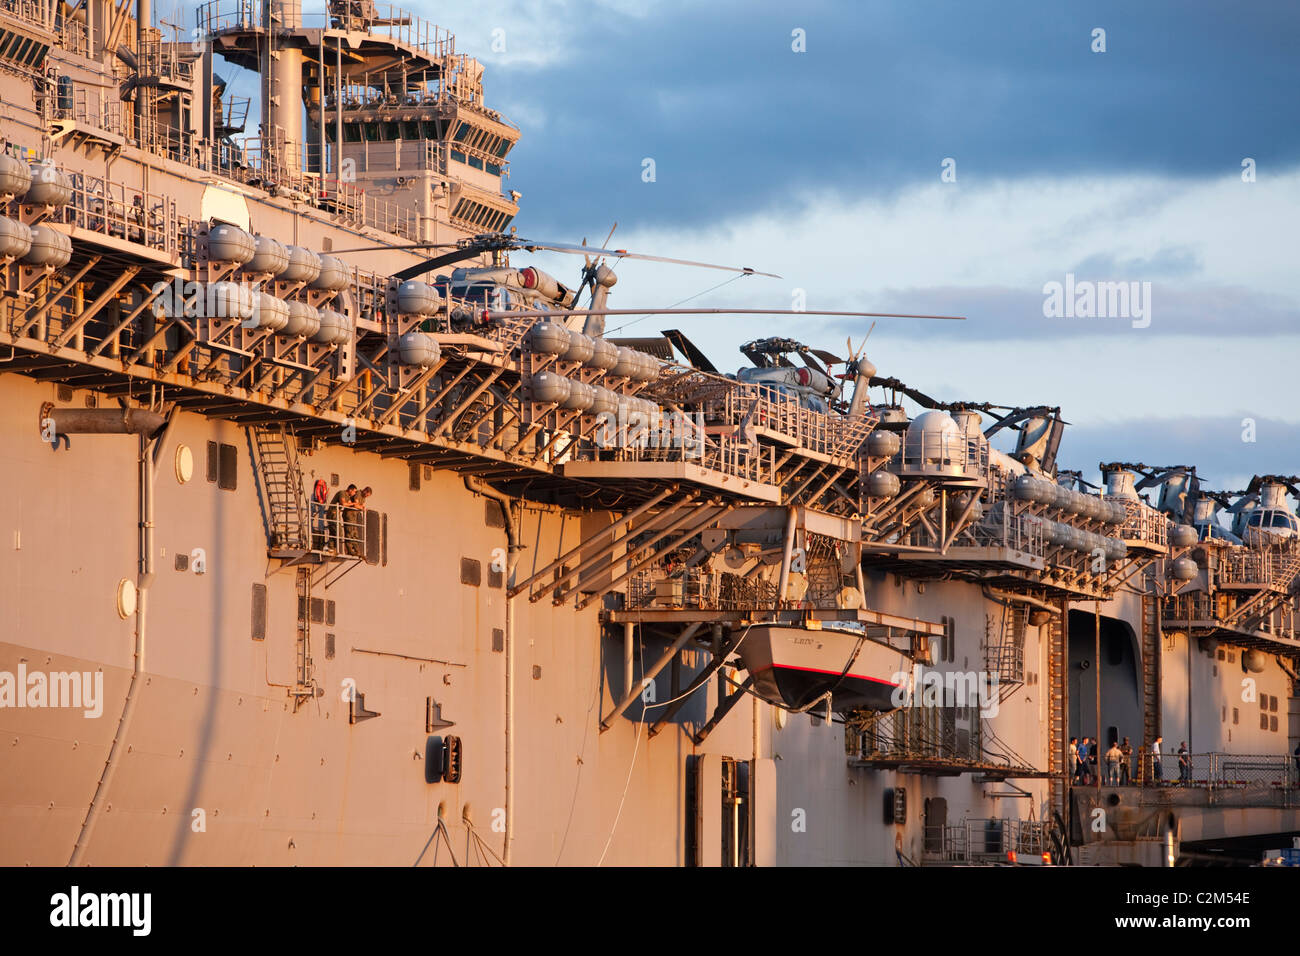 L'USS Essex - un navire d'assaut amphibie. Cairns, Queensland, Australie Banque D'Images